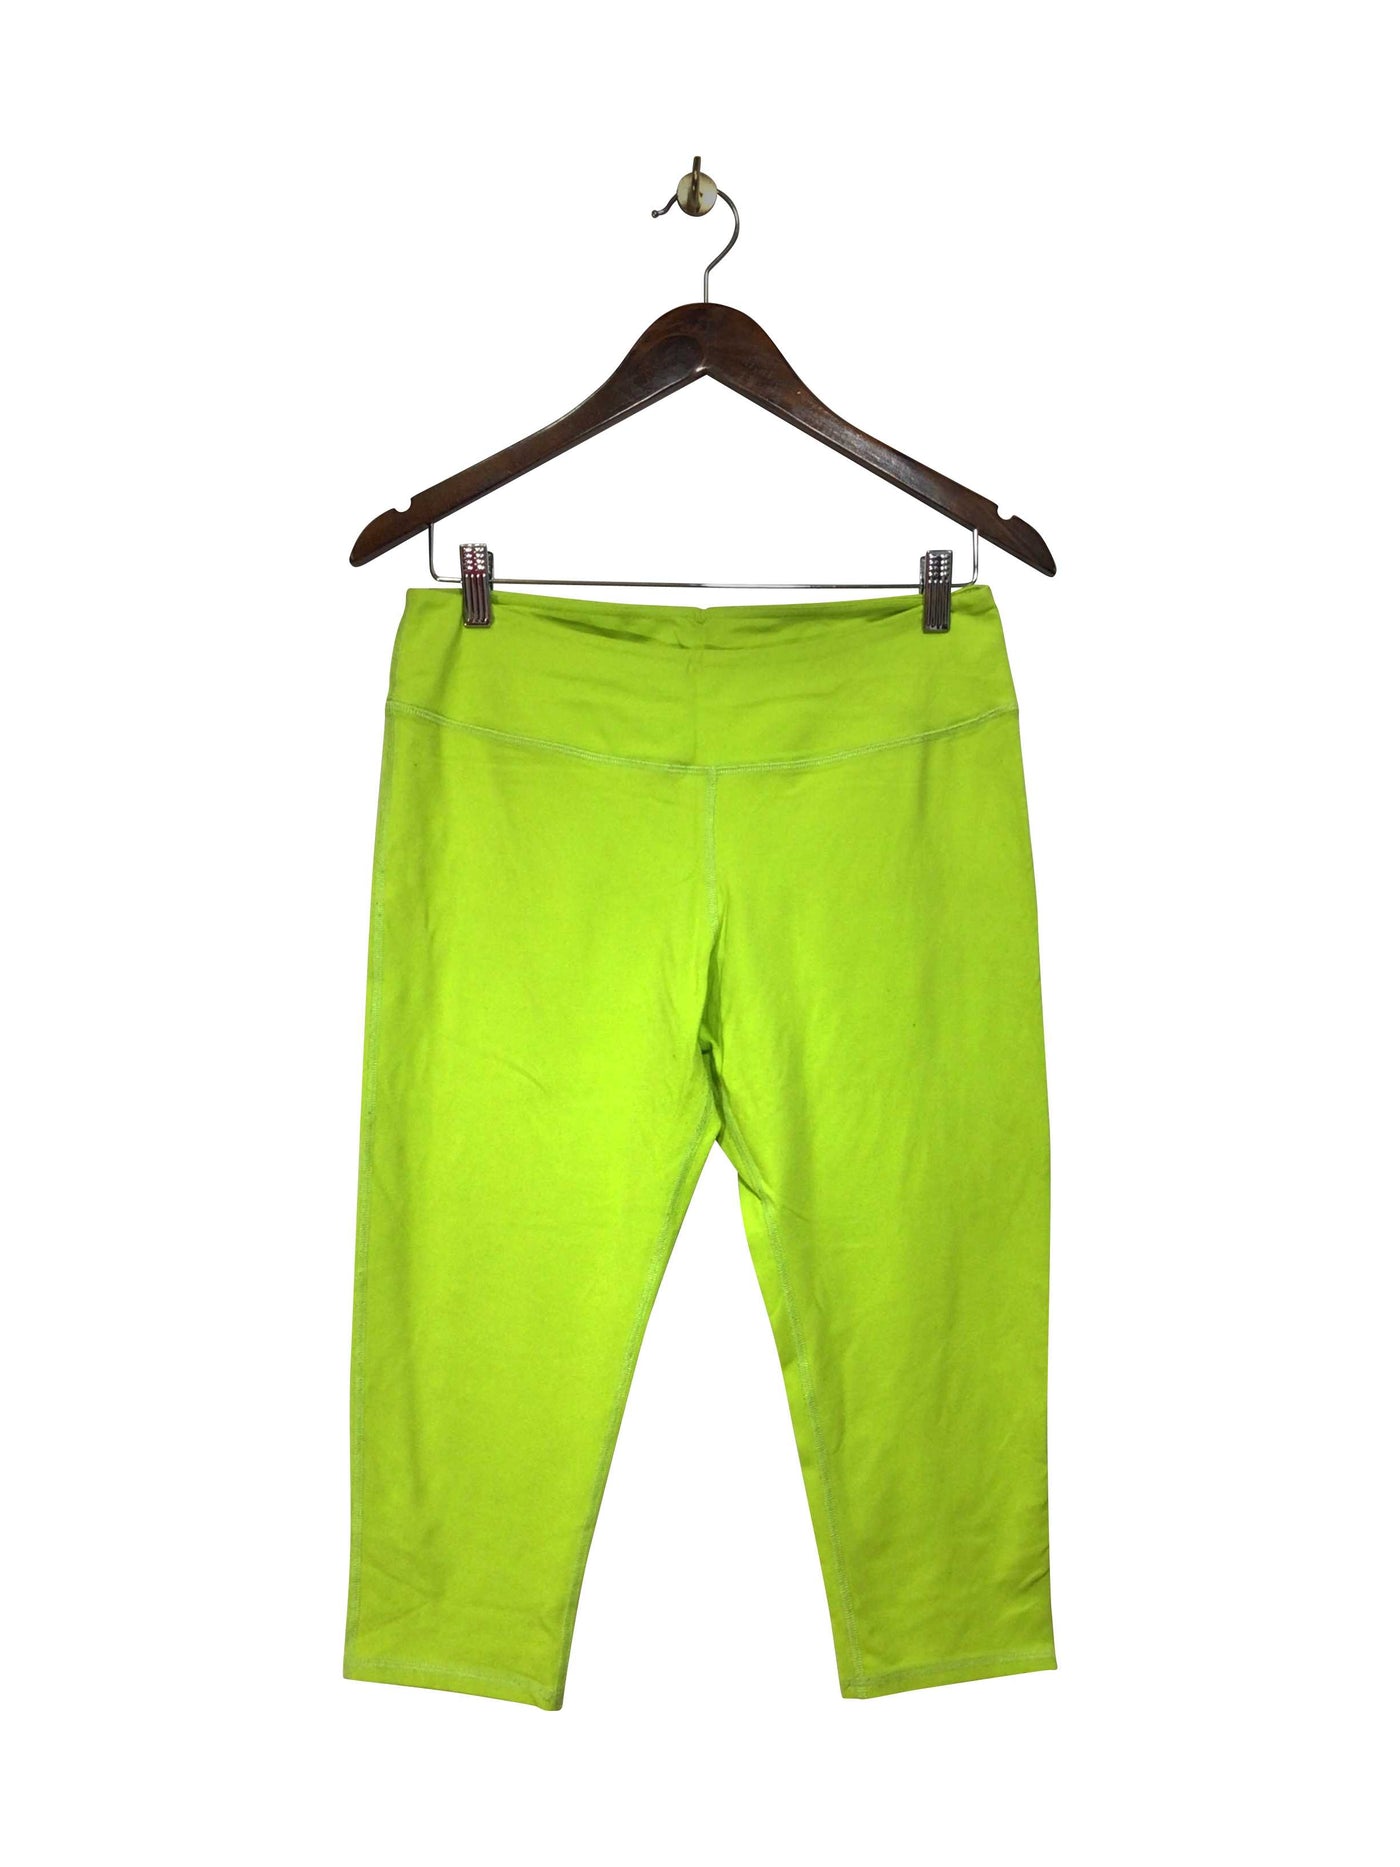 LEO STAR ATHLETICA Regular fit Activewear Legging in Yellow  -  8  13.25 Koop